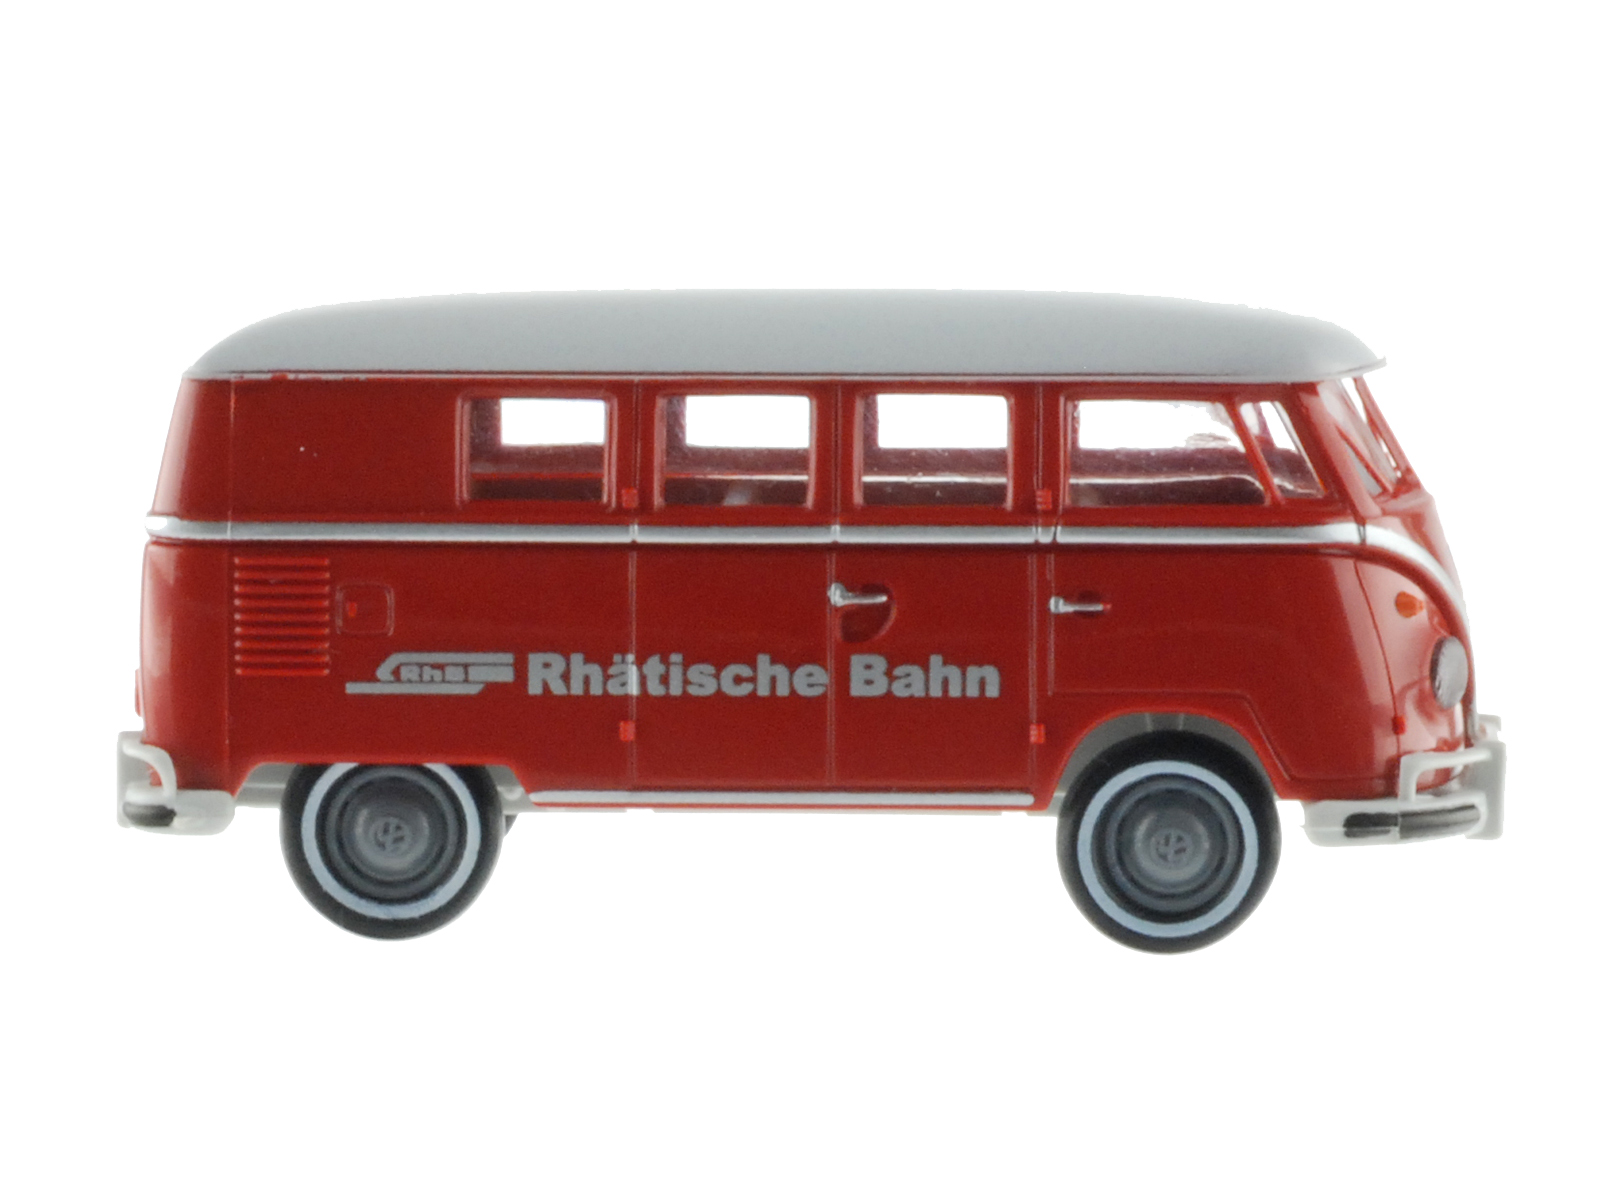 VW T1b Kombi Rhätische Bahn RhB Sondermodell Hünerbein limitiert 400 Stück